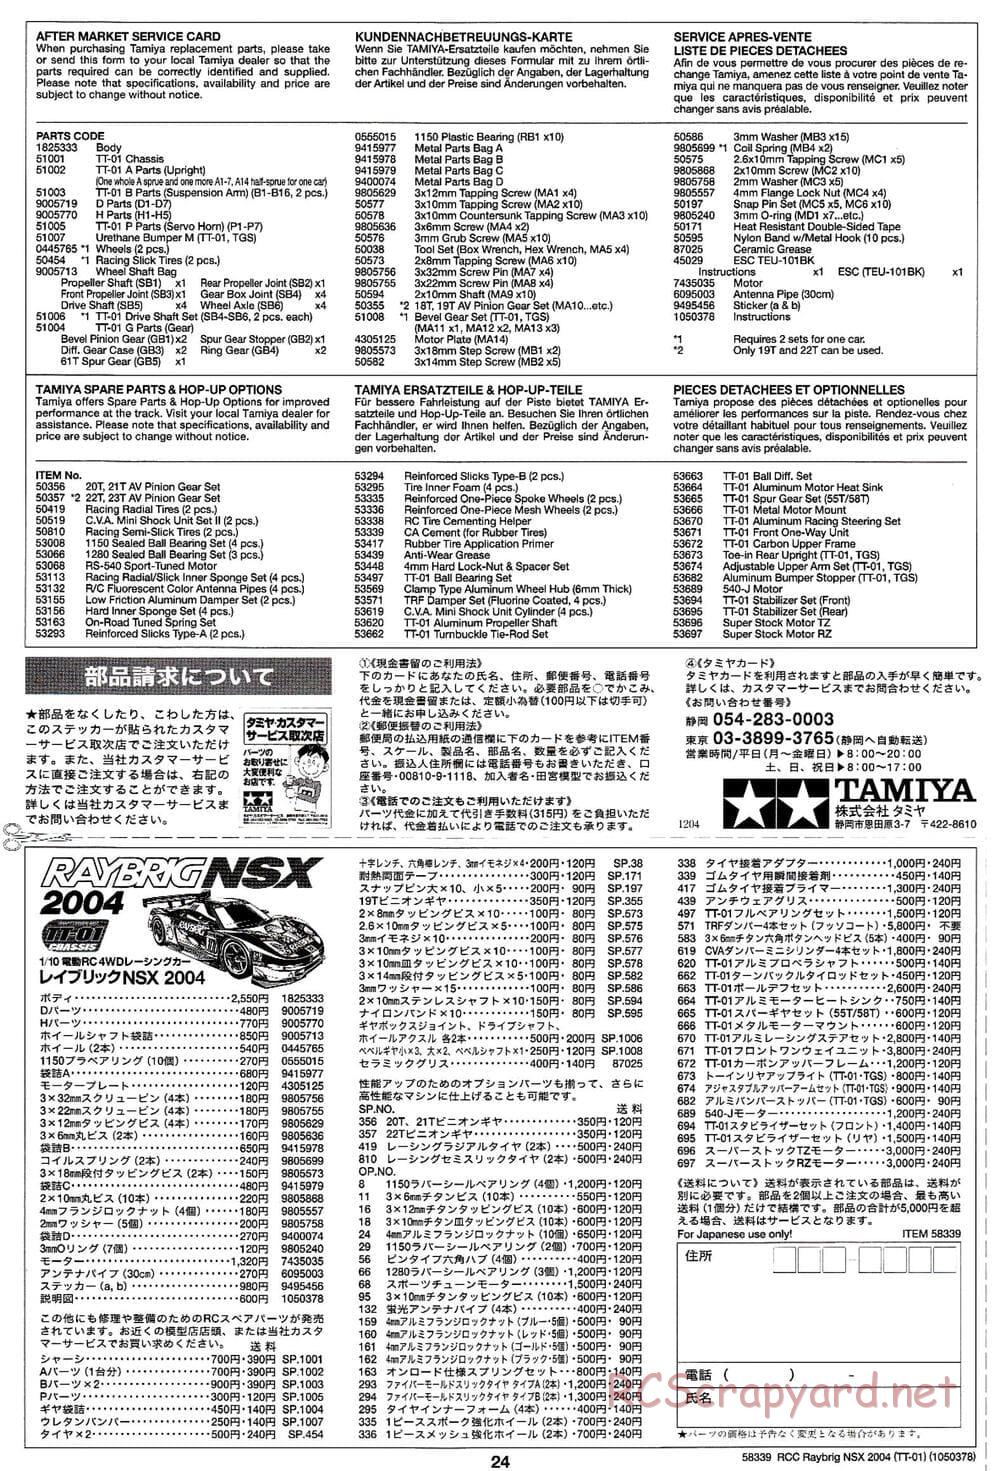 Tamiya - Raybrig NSX 2004 Chassis - Manual - Page 24